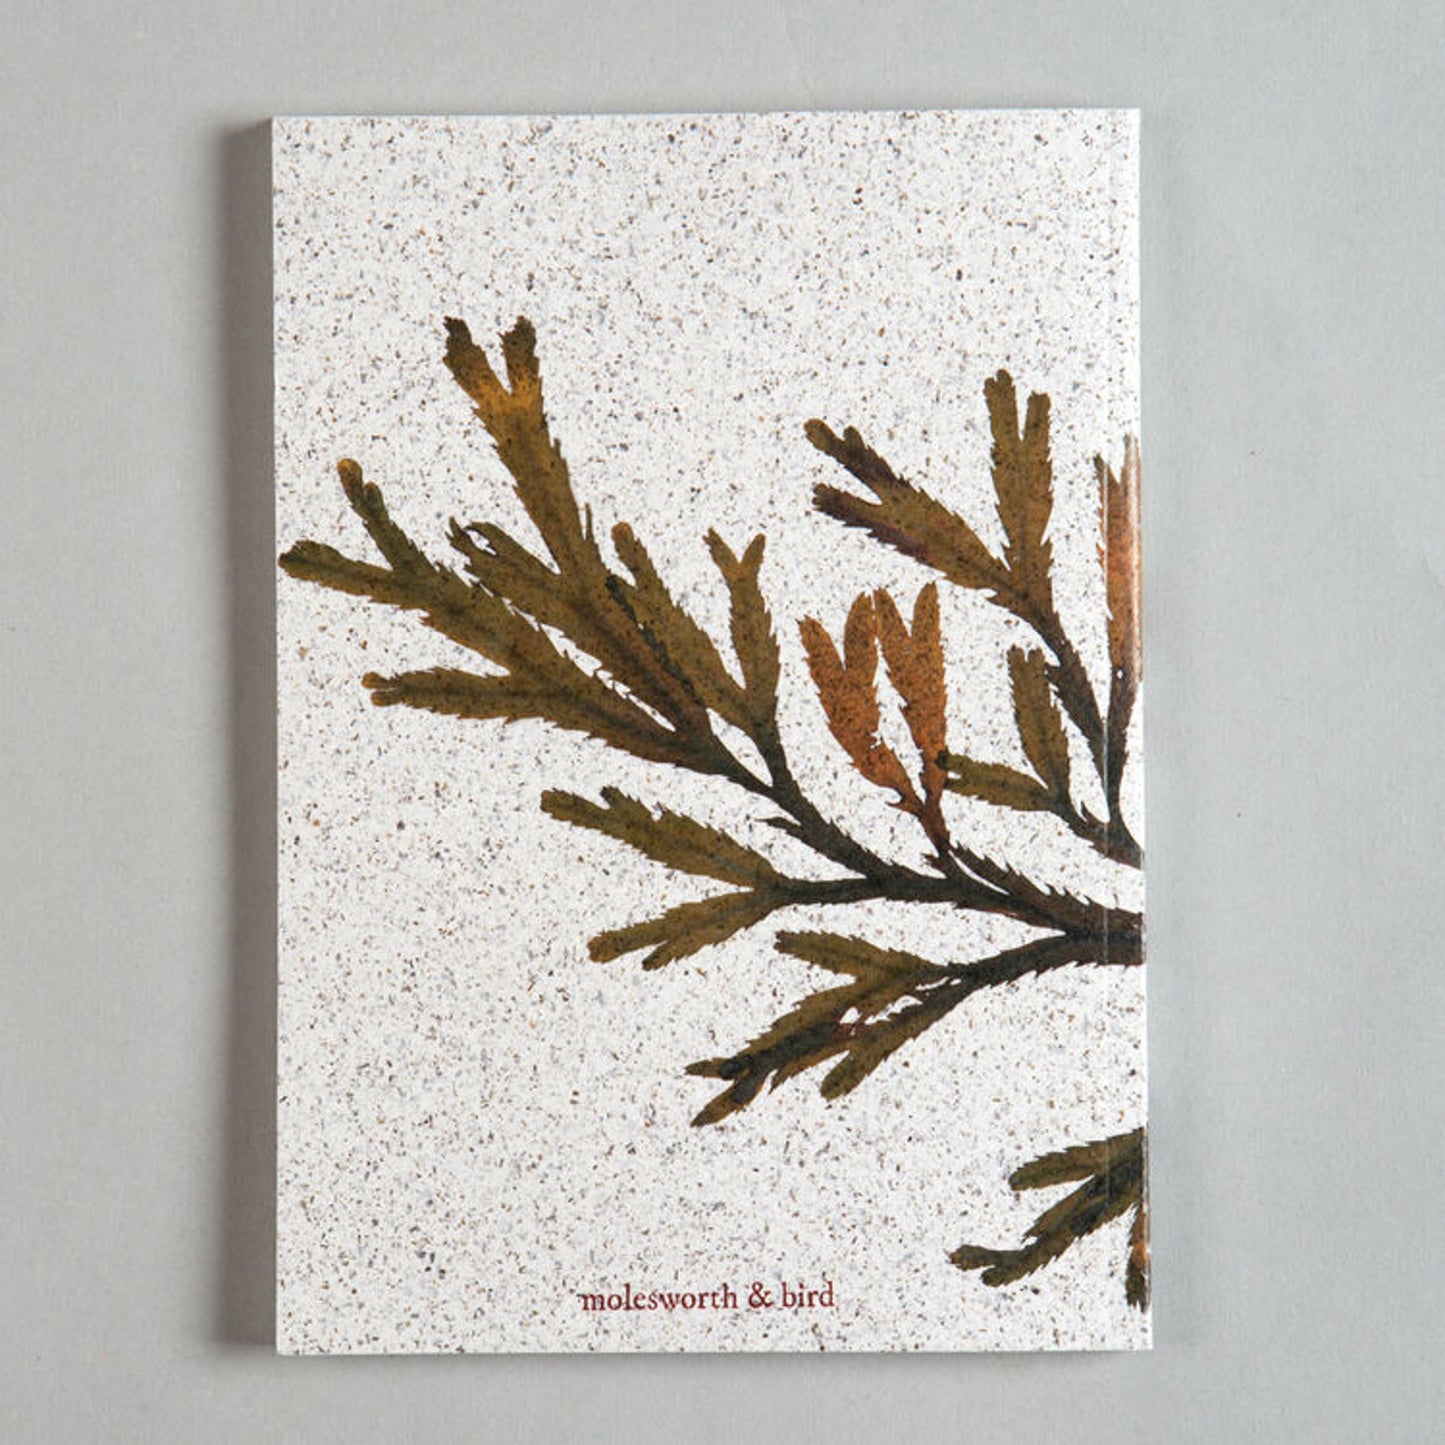 Seaweed Notepad, Notebook